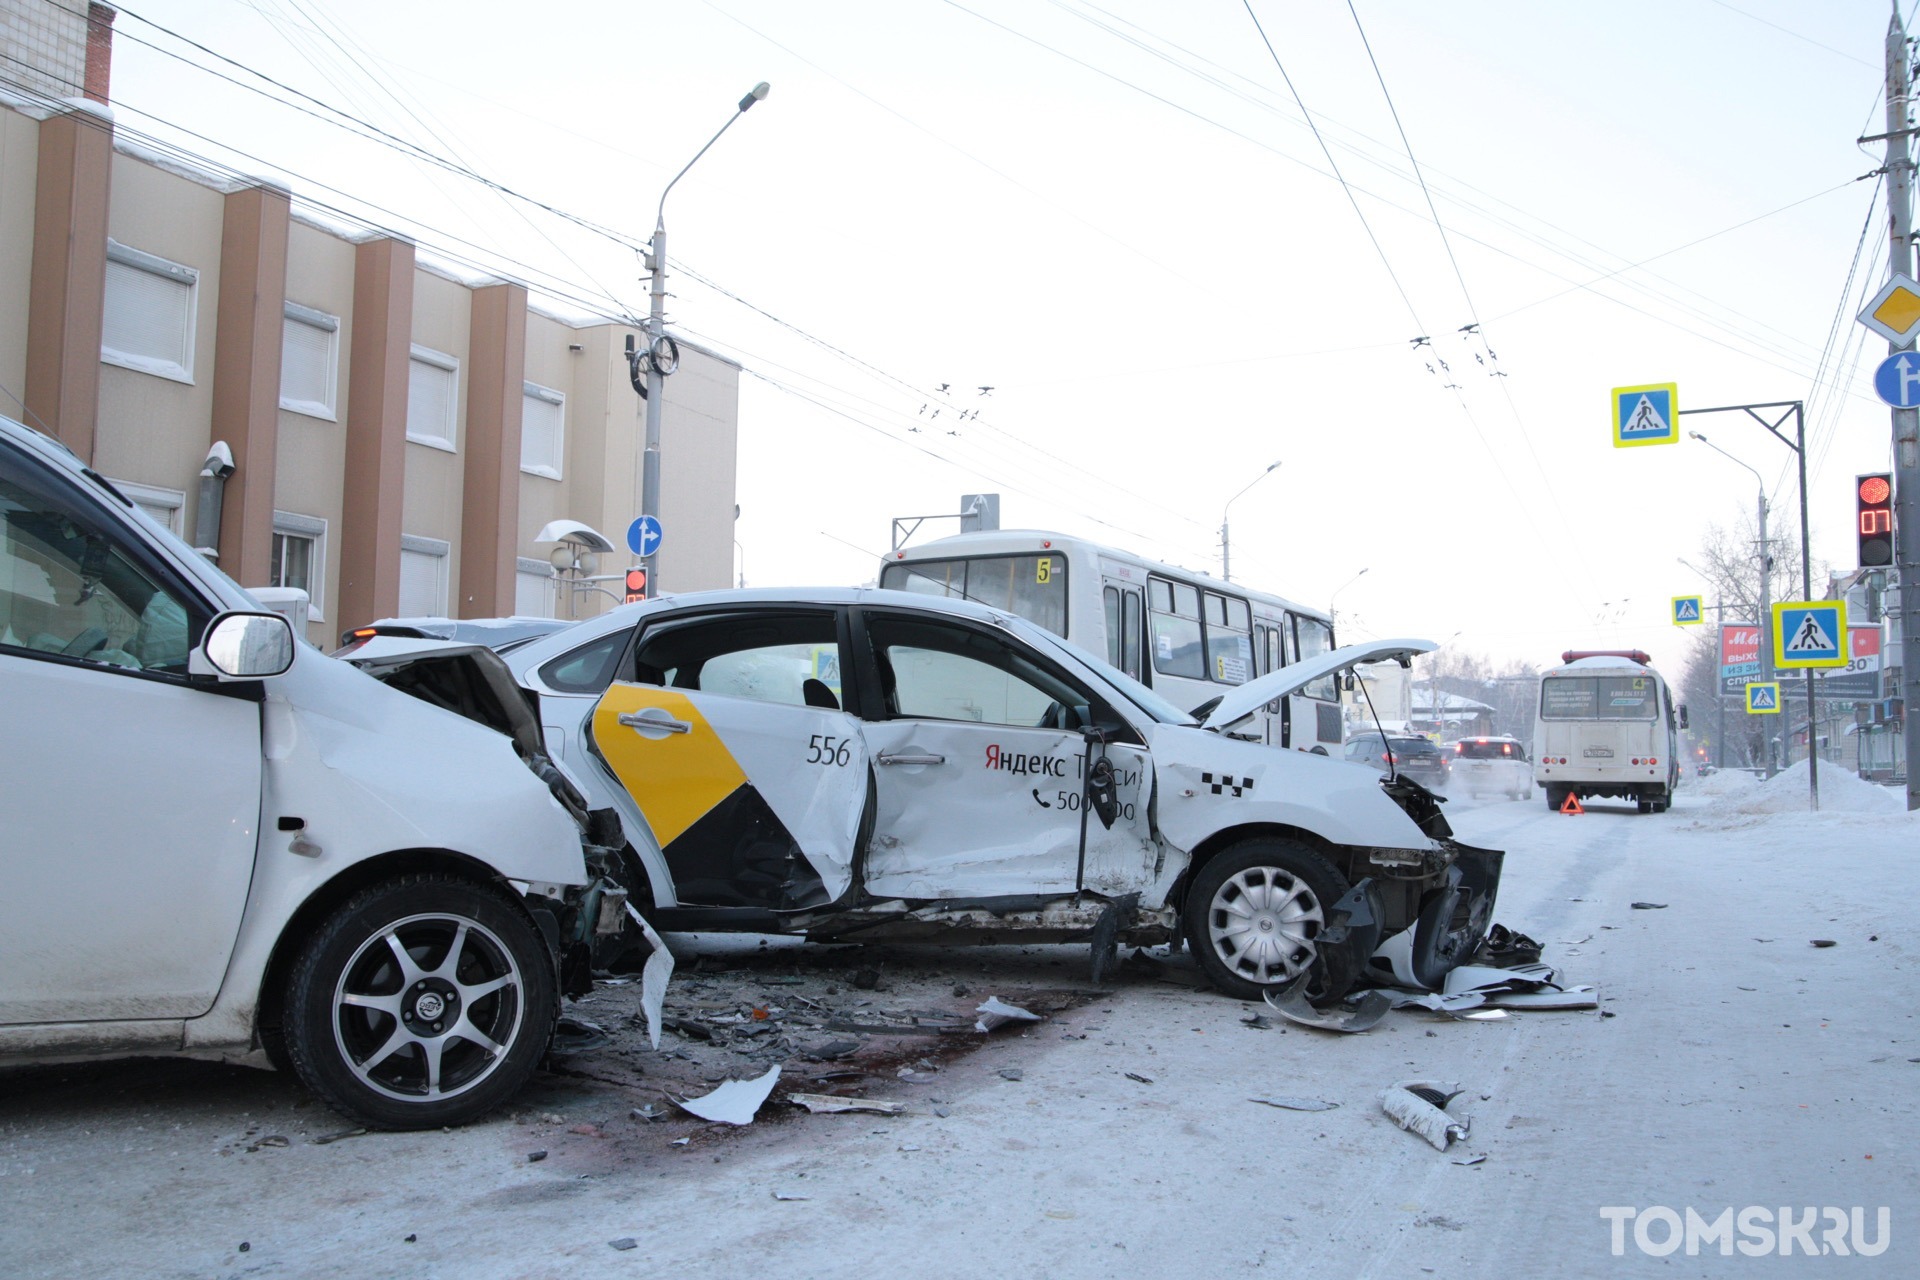 Серьезное ДТП в центре Томска: столкнулись два легковых автомобиля